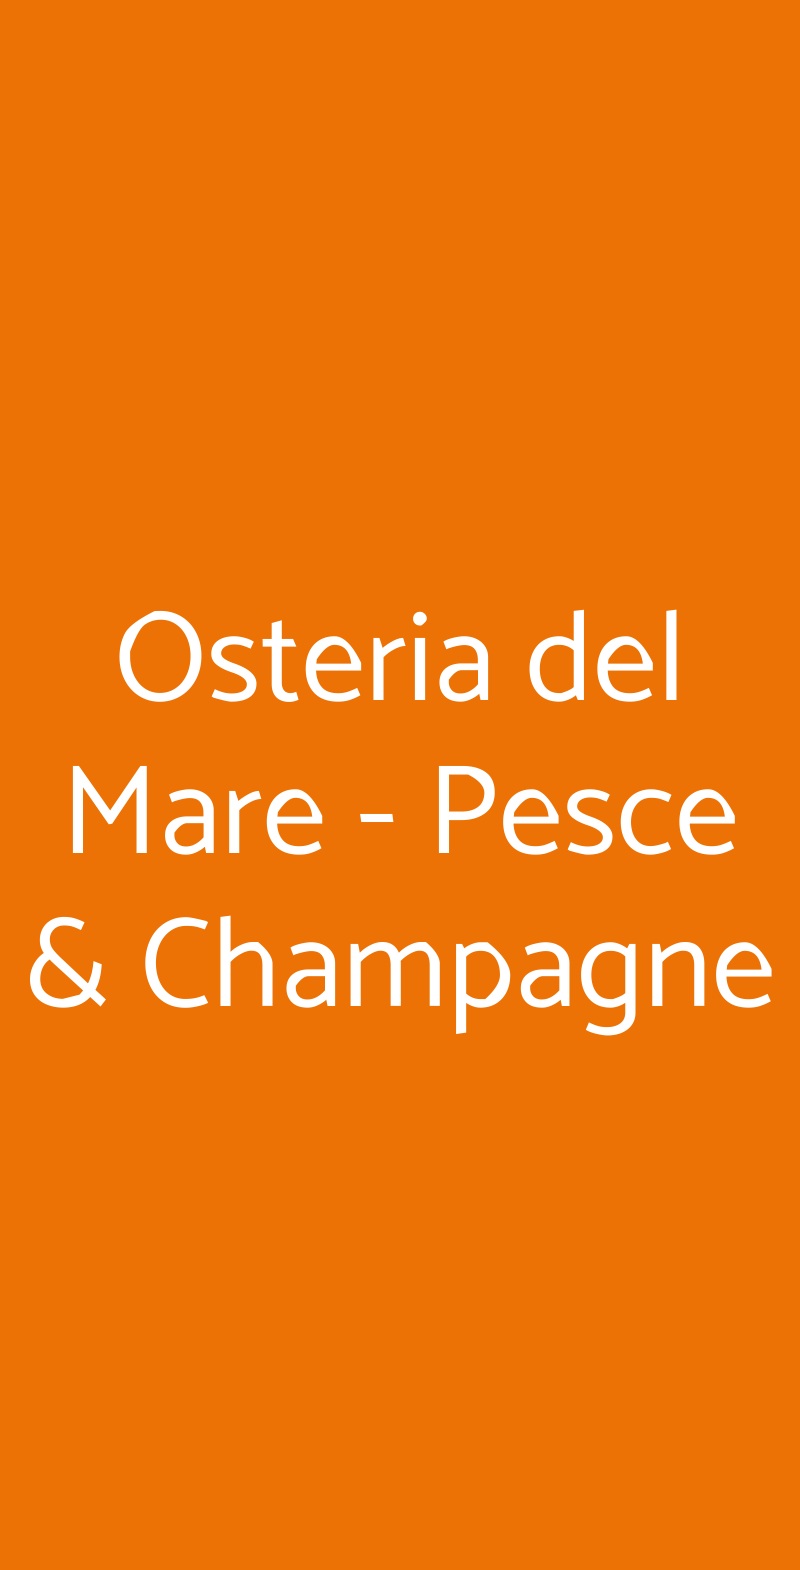 Osteria del Mare - Pesce & Champagne Napoli menù 1 pagina